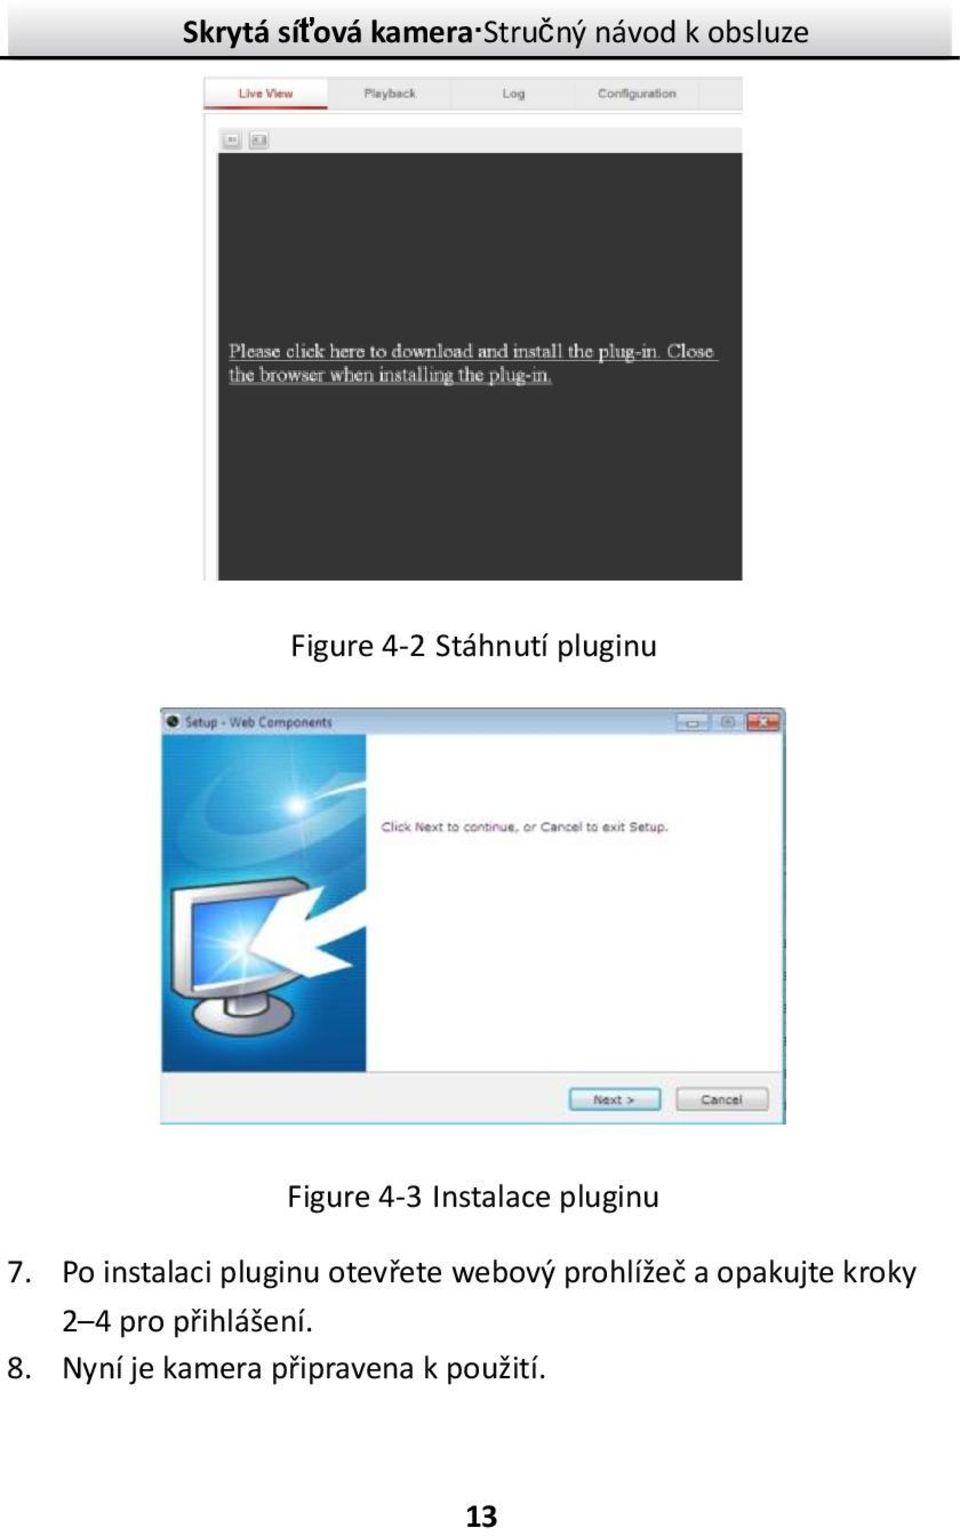 Po instalaci pluginu otevřete webový prohlížeč